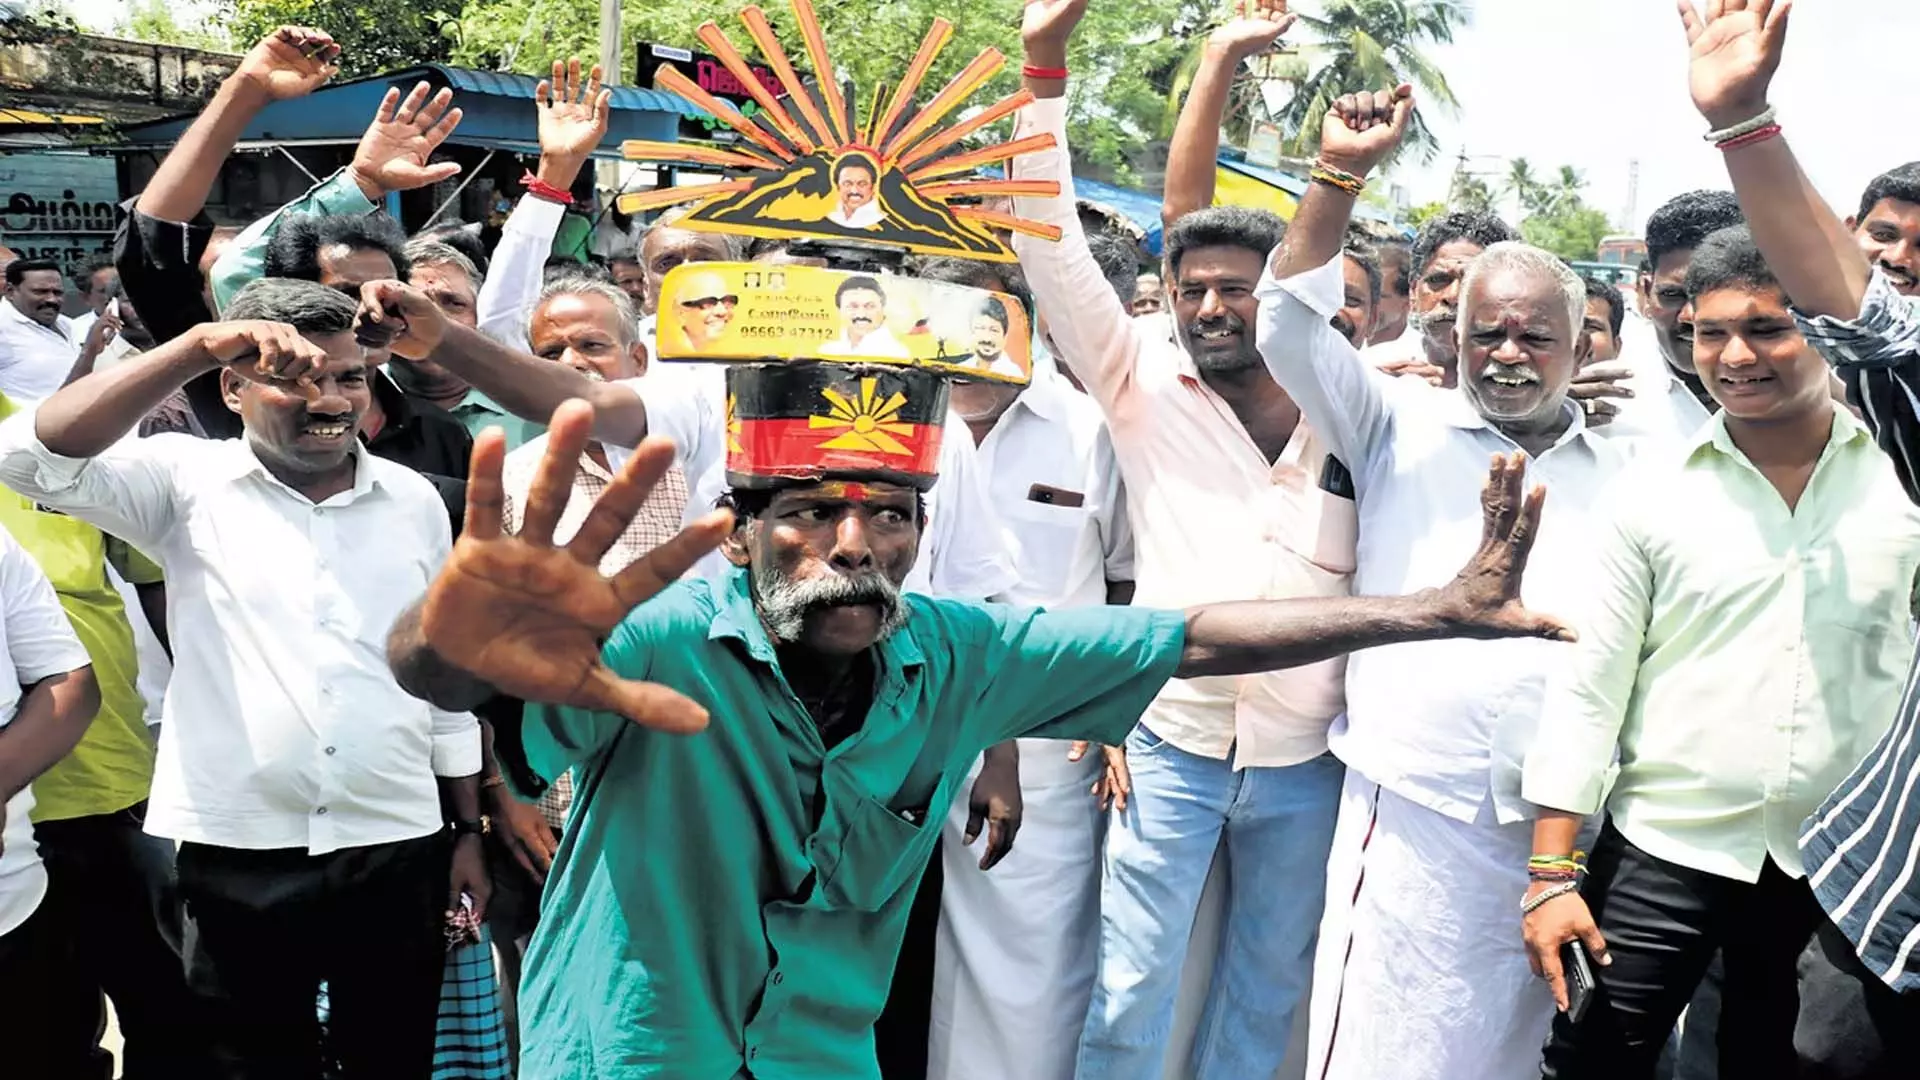 Chennai News: स्टालिन का दावा, जीत डीएमके में मतदाताओं के विश्वास को दर्शाती है पीएमके